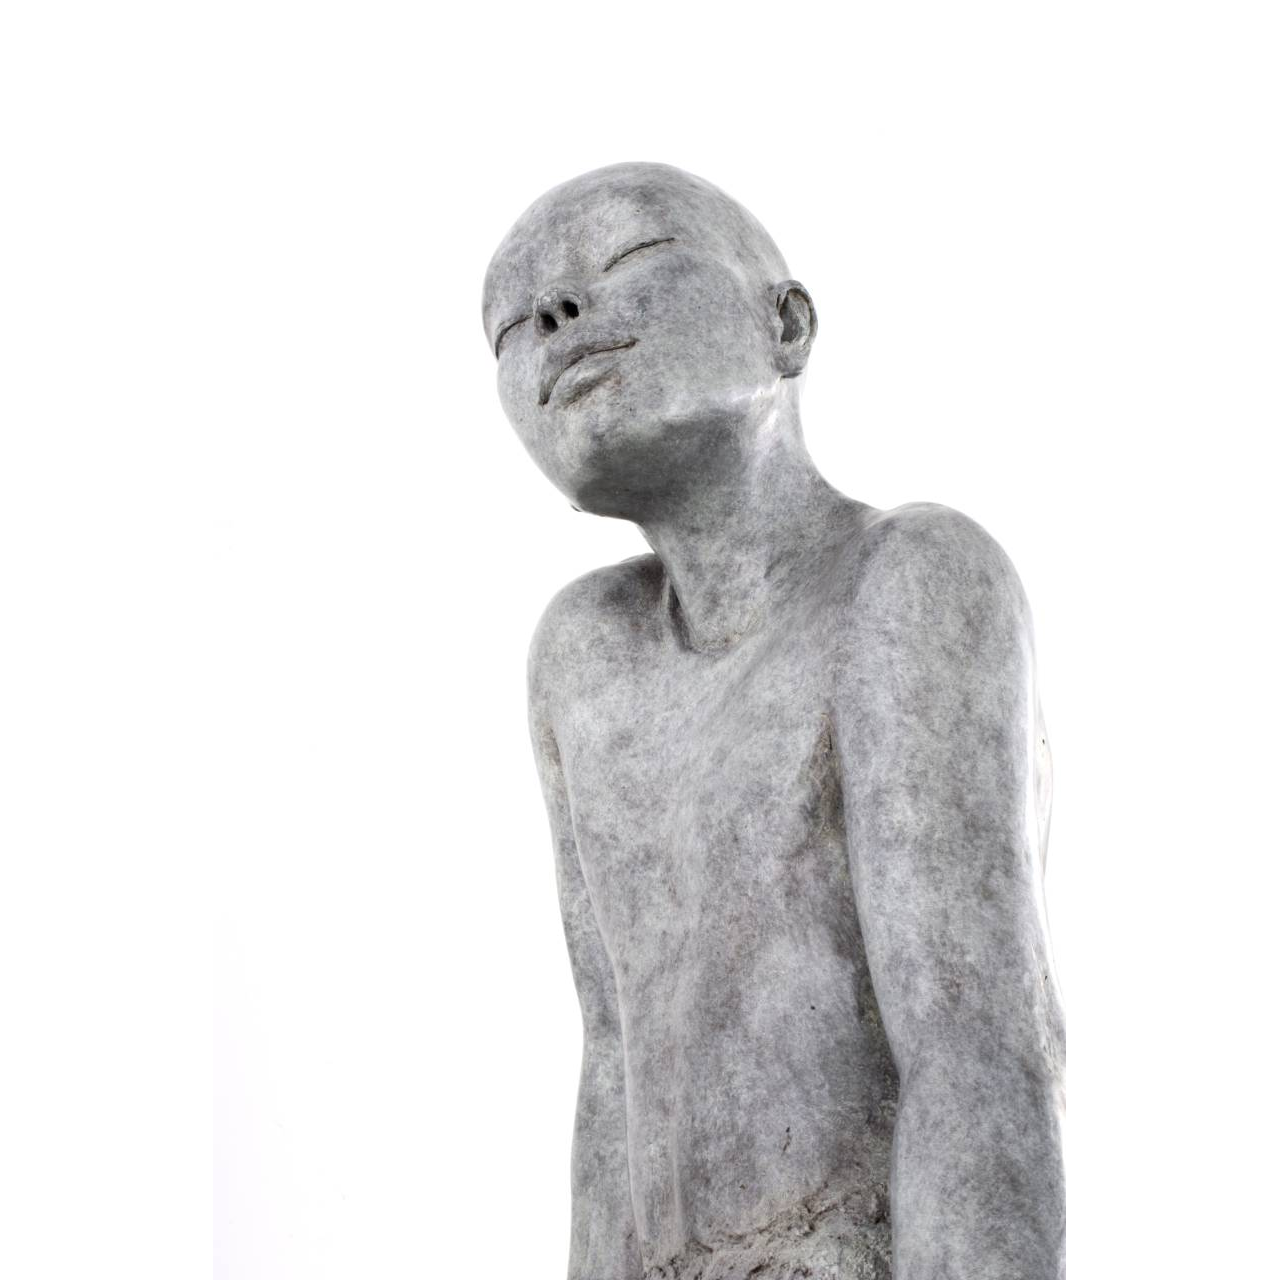 Claude JUSTAMON, Murmure, Bronze, 74 X 39 X 35 cm